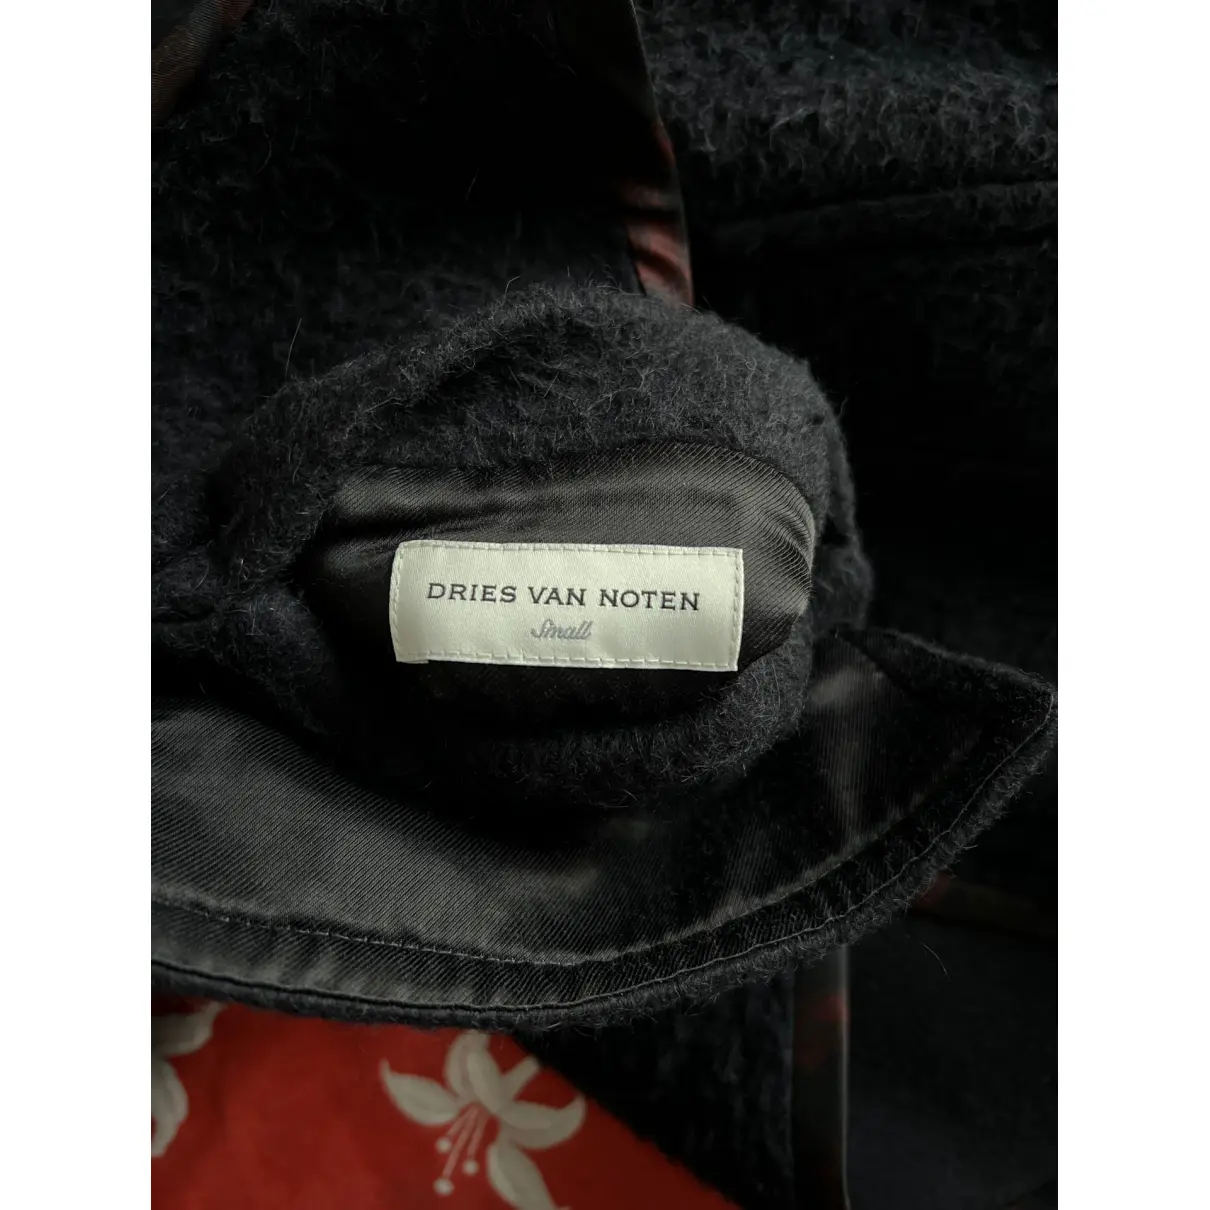 Buy Dries Van Noten Wool coat online